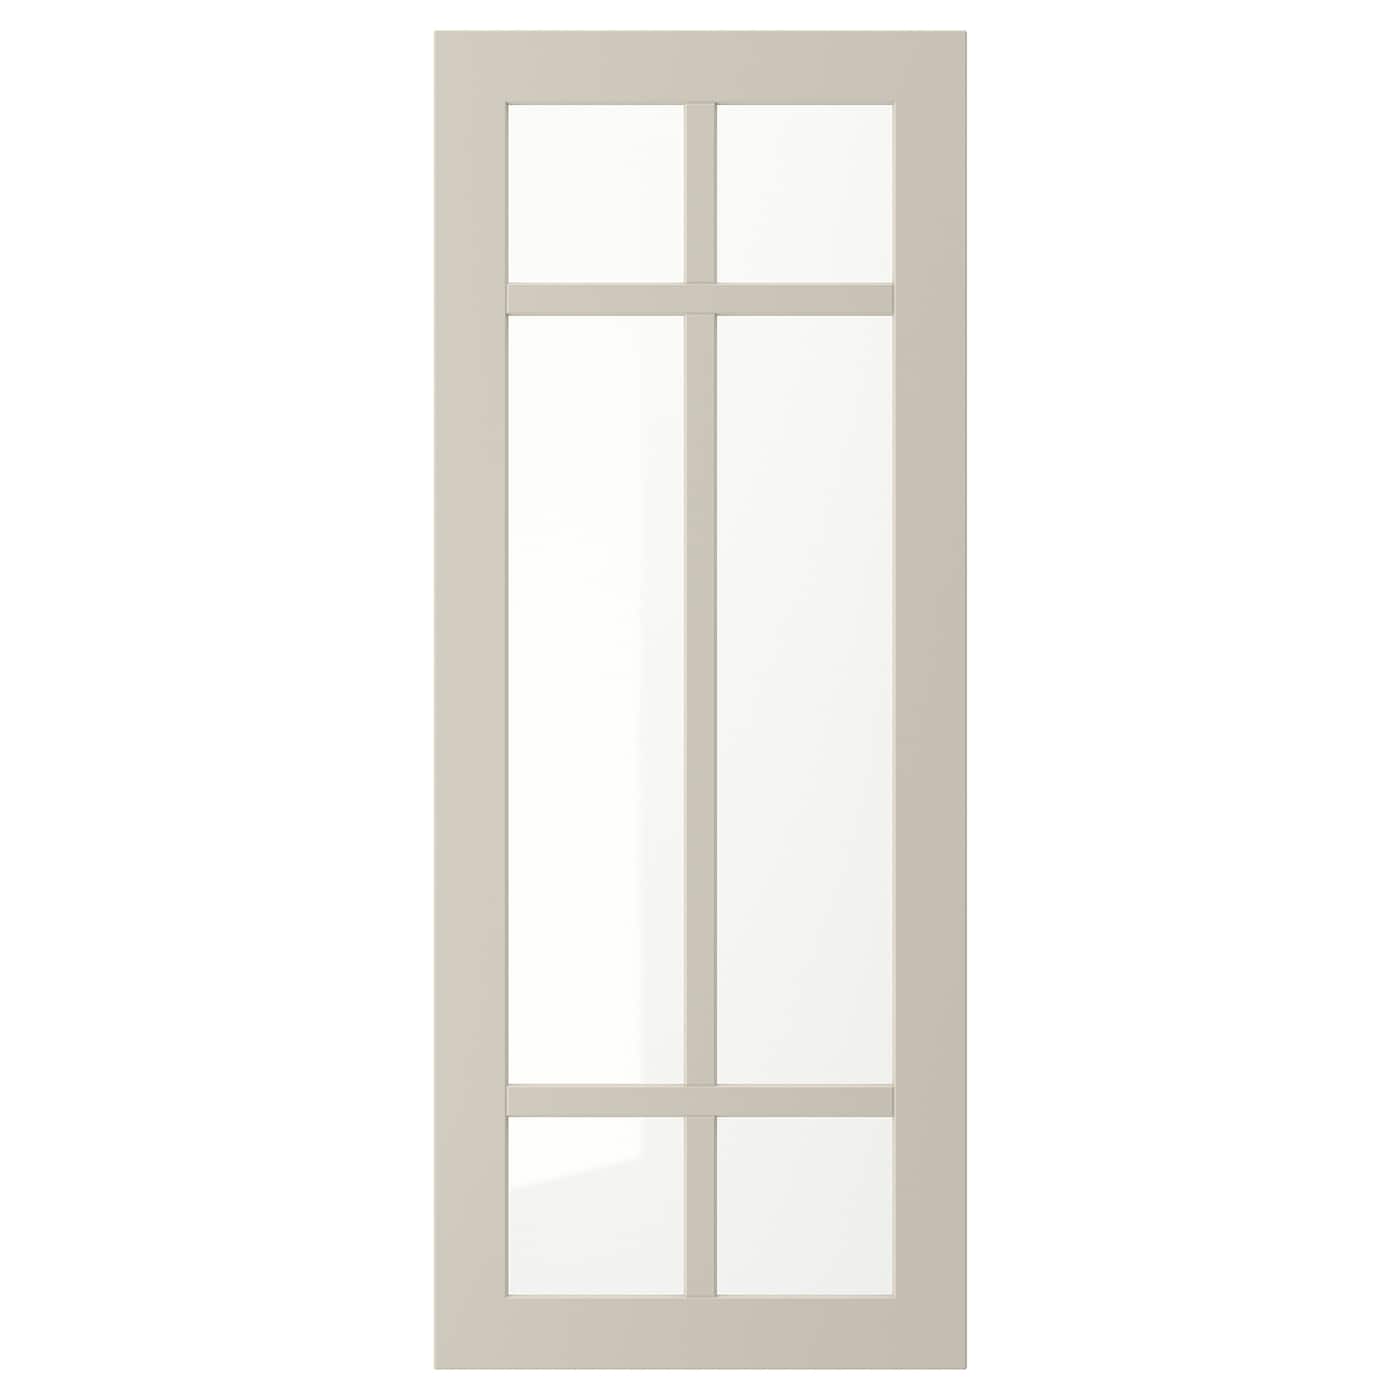 Дверца со стеклом - IKEA STENSUND, 100х40 см, бежевый, СТЕНСУНД ИКЕА